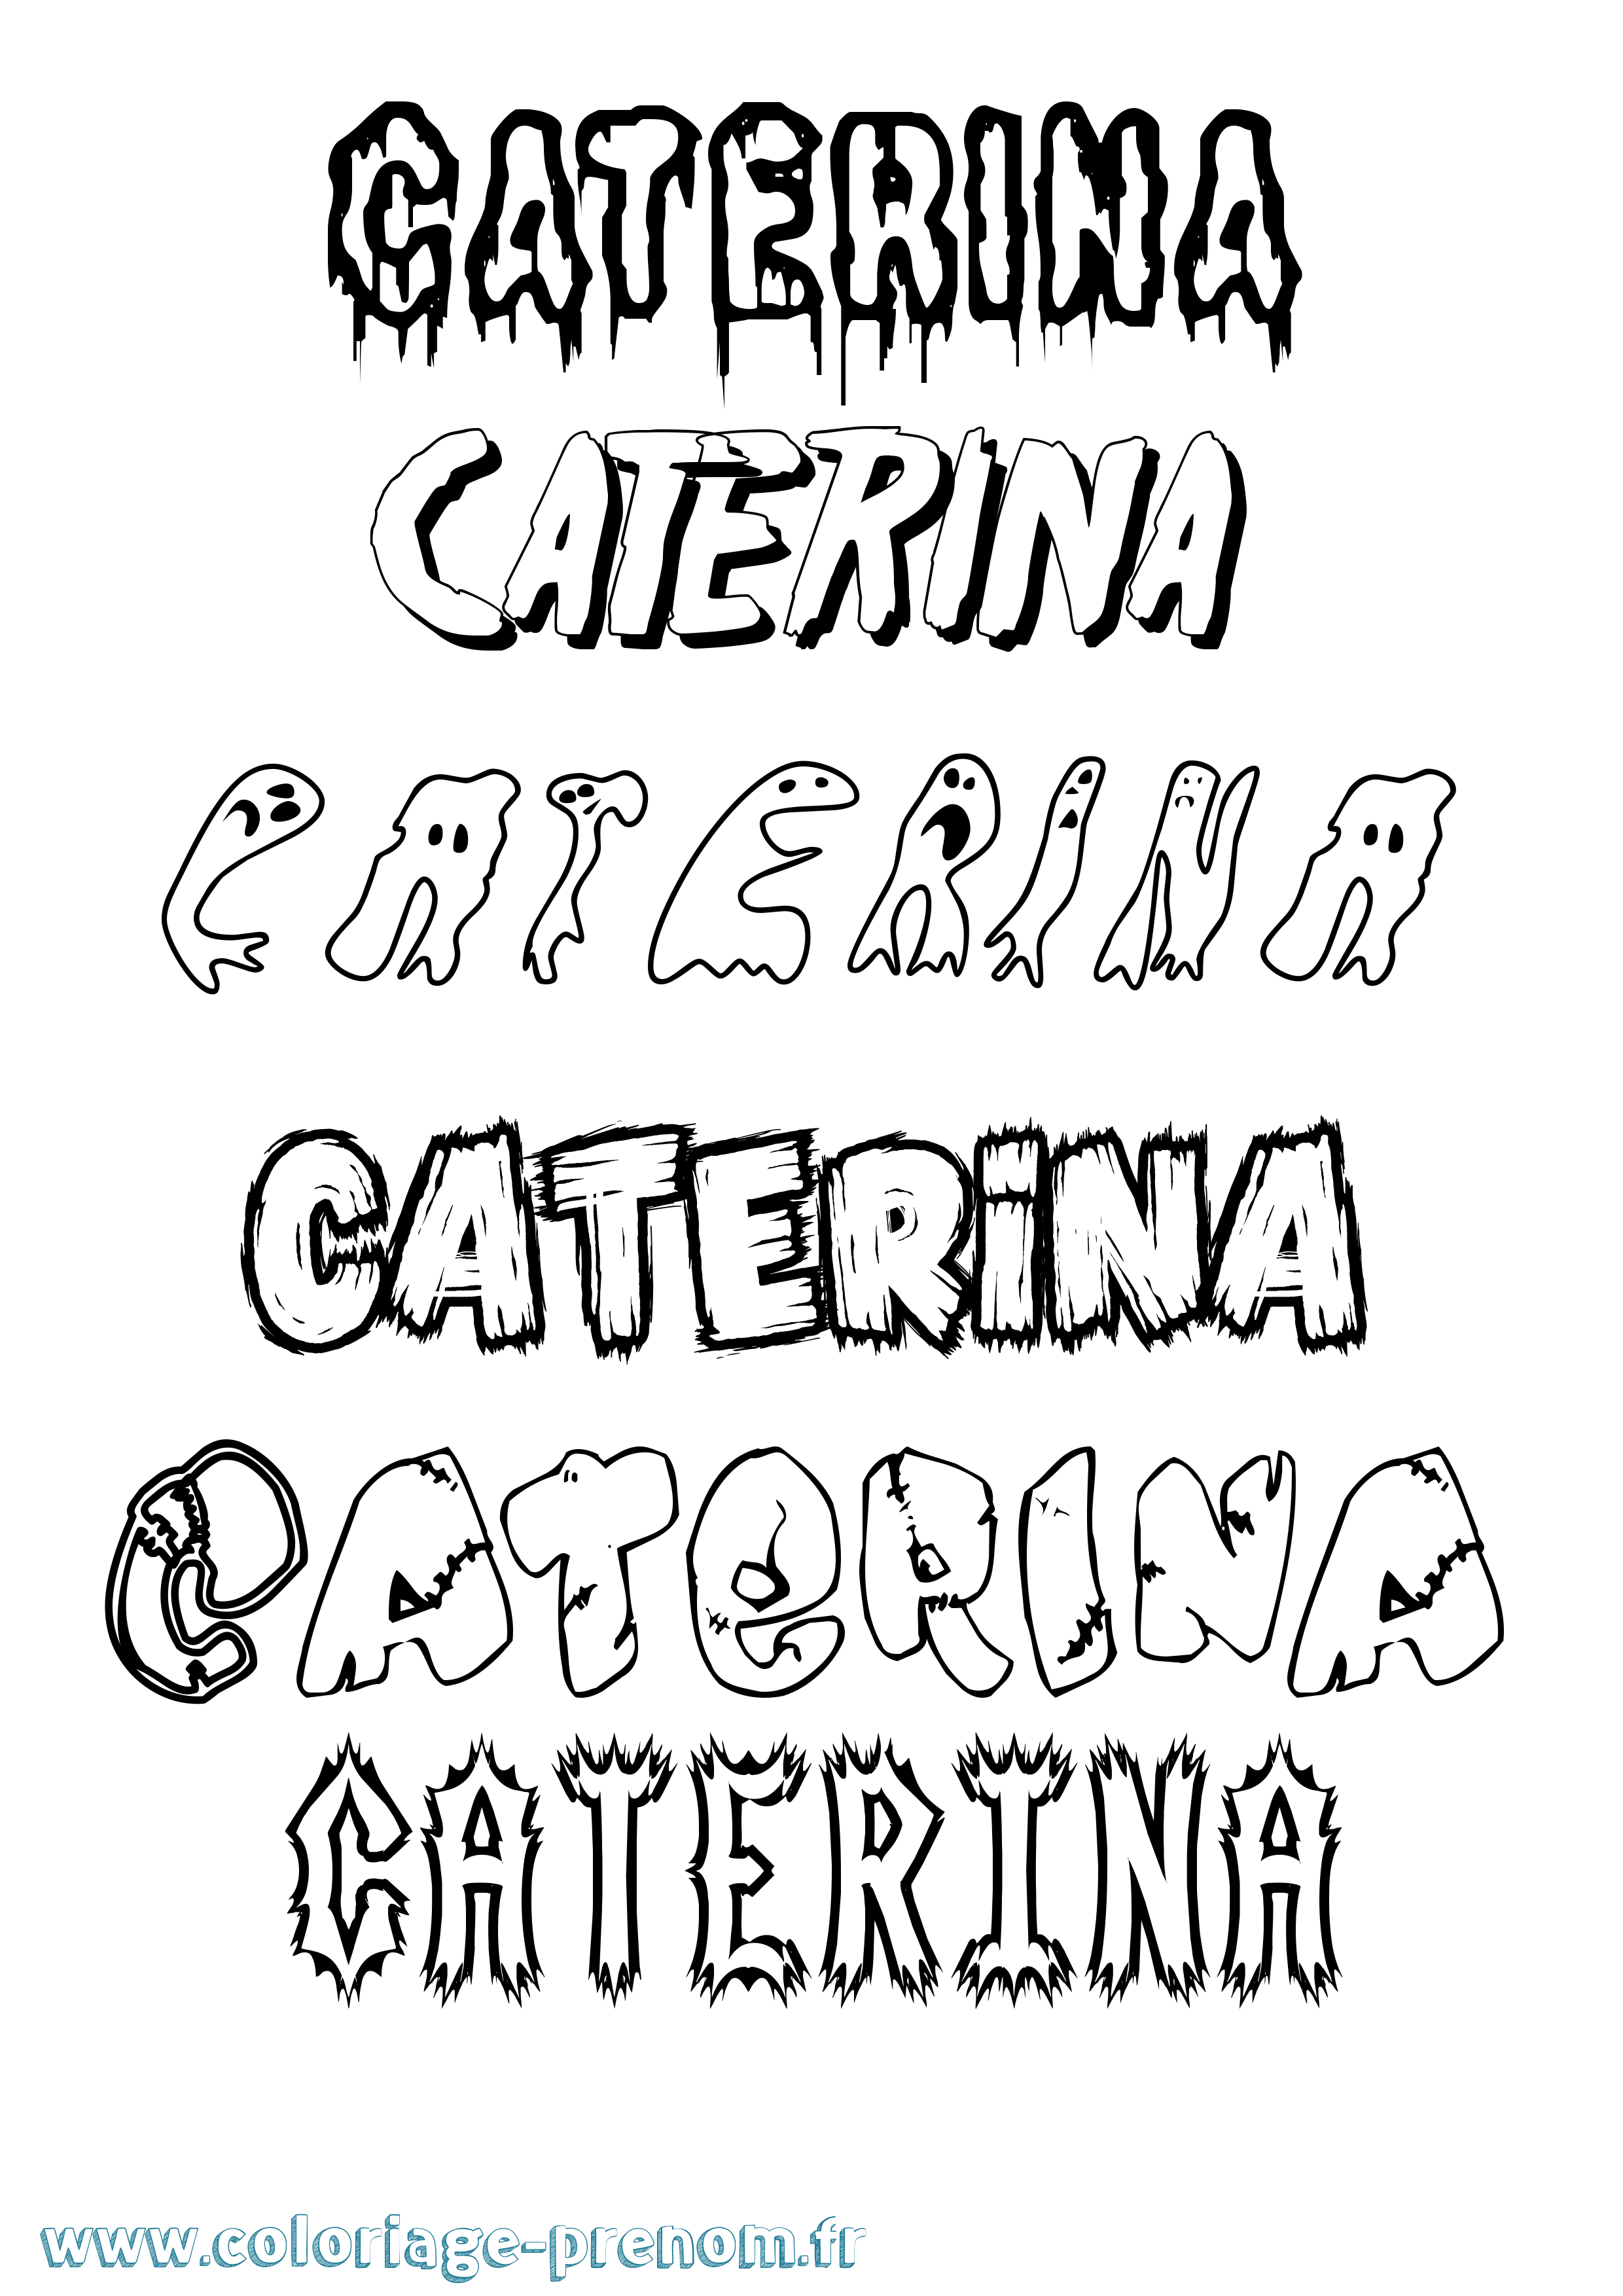 Coloriage prénom Caterina Frisson